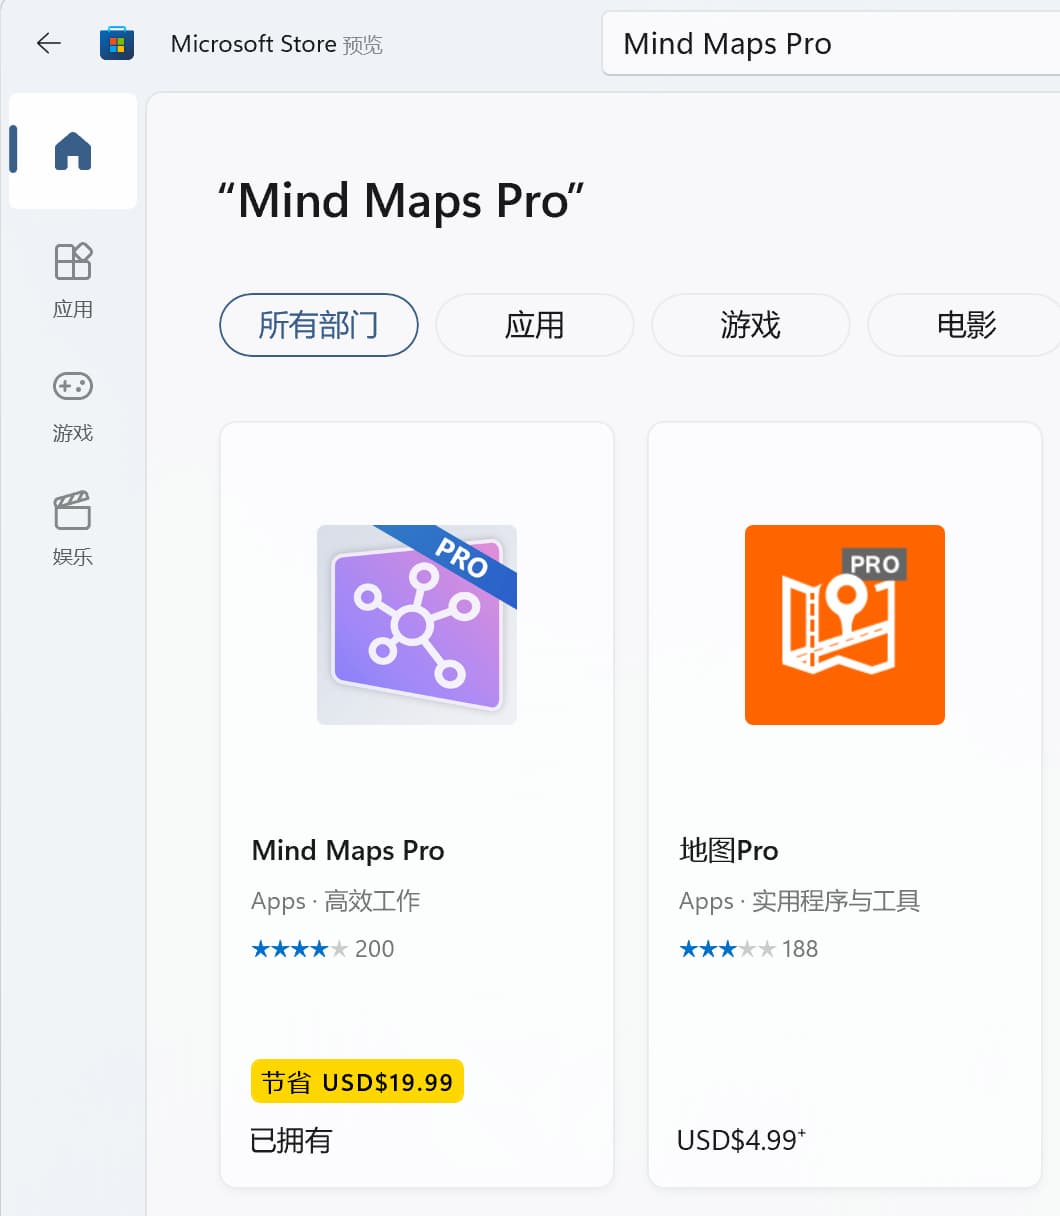 Mind Maps Pro 限免，专业思维导图工具，原价 144 元[Windows] 2